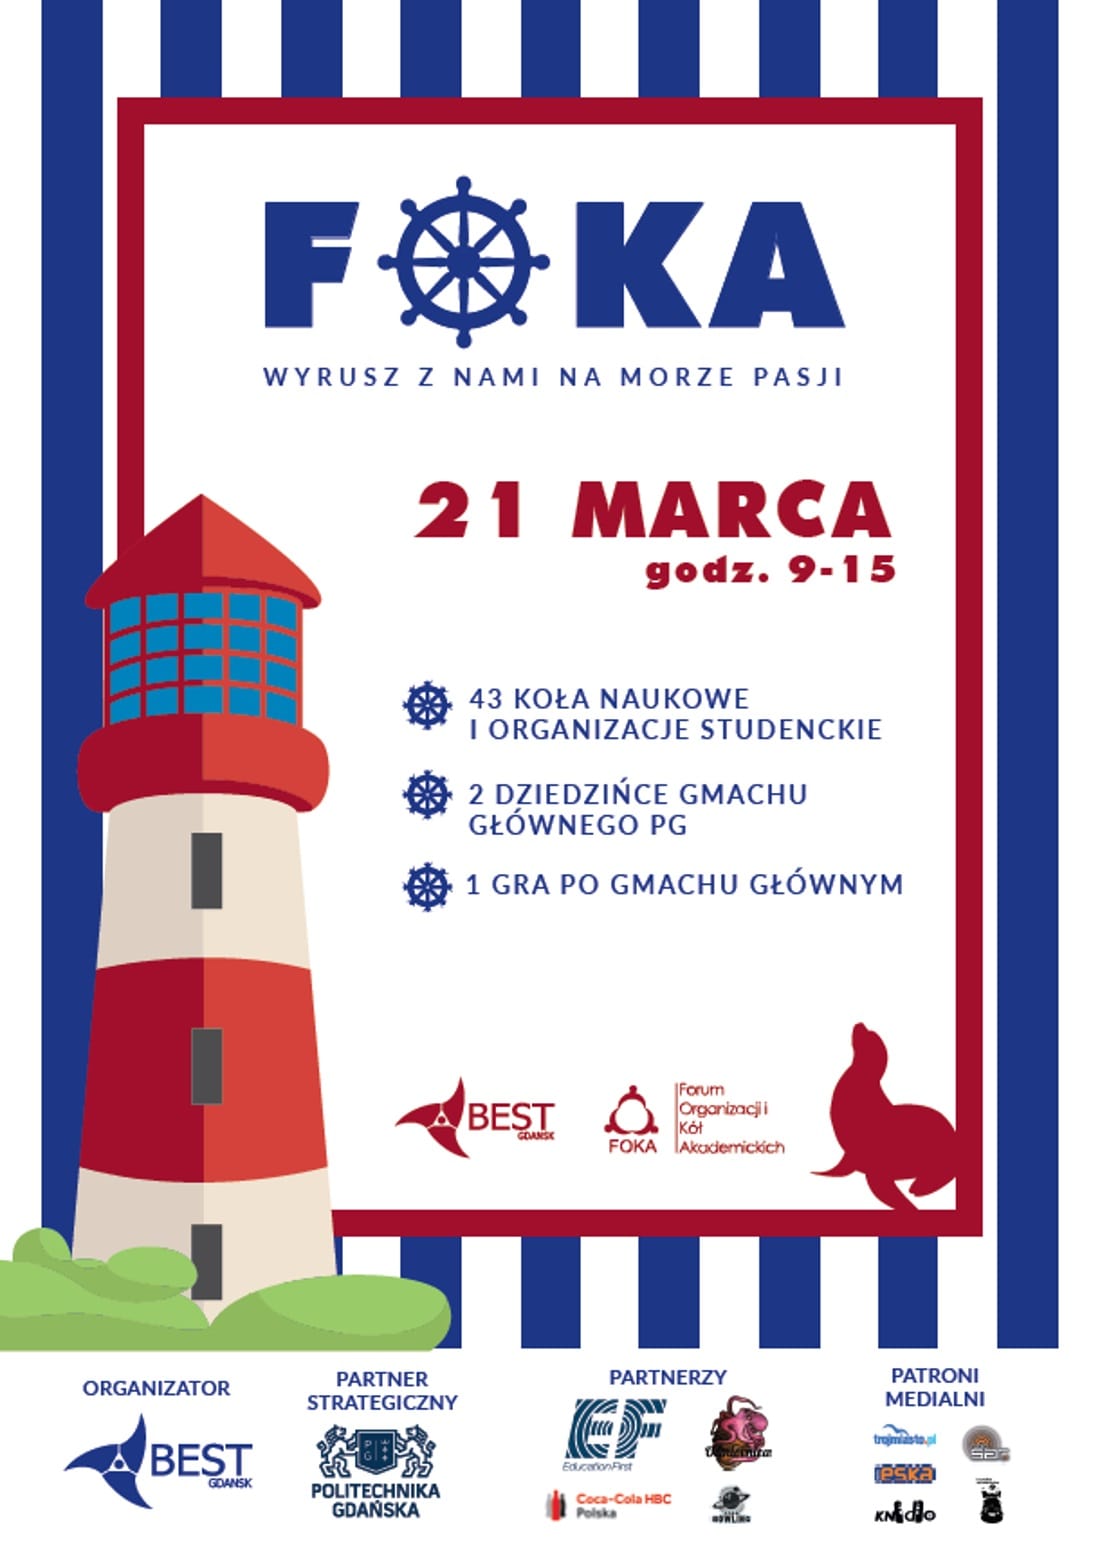 FOKA odbędzie się 21 marca 2018 roku.